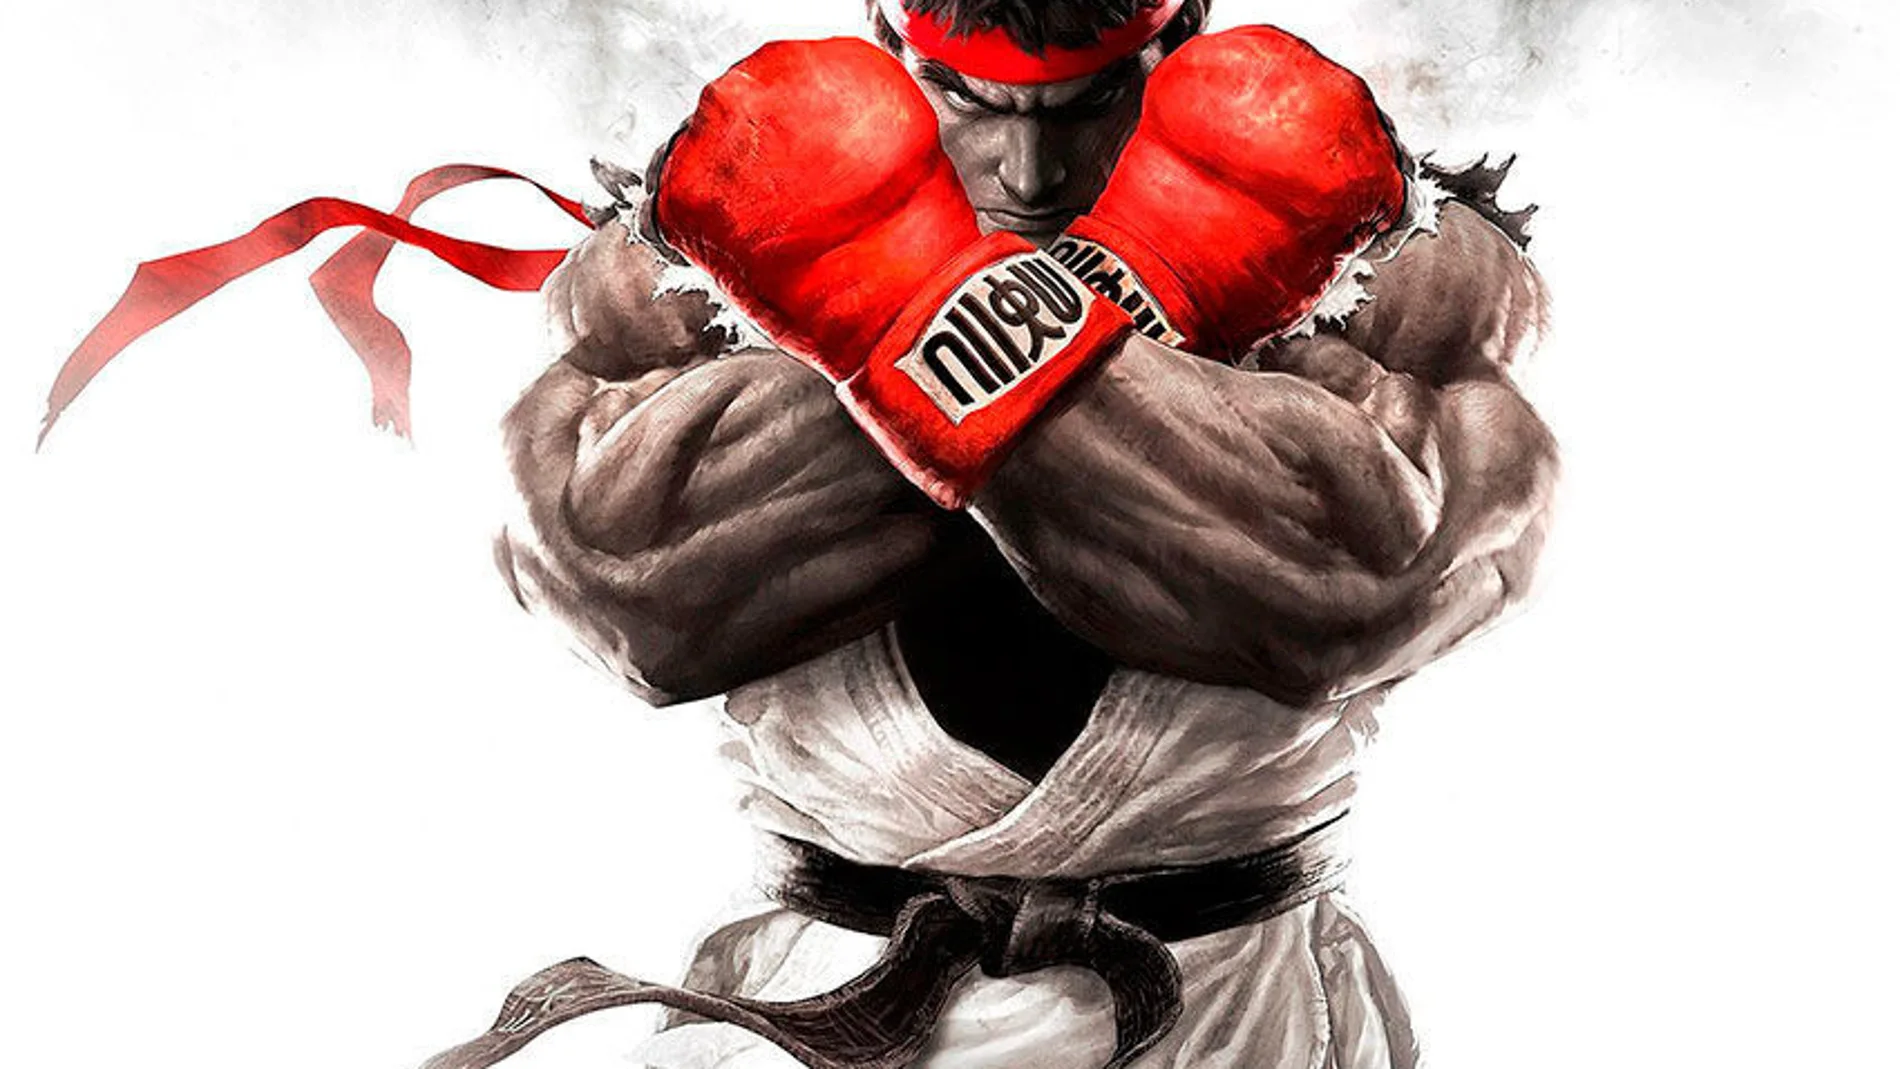 Descubre a Menat, la nueva luchadora de Street Fighter V se presenta en video